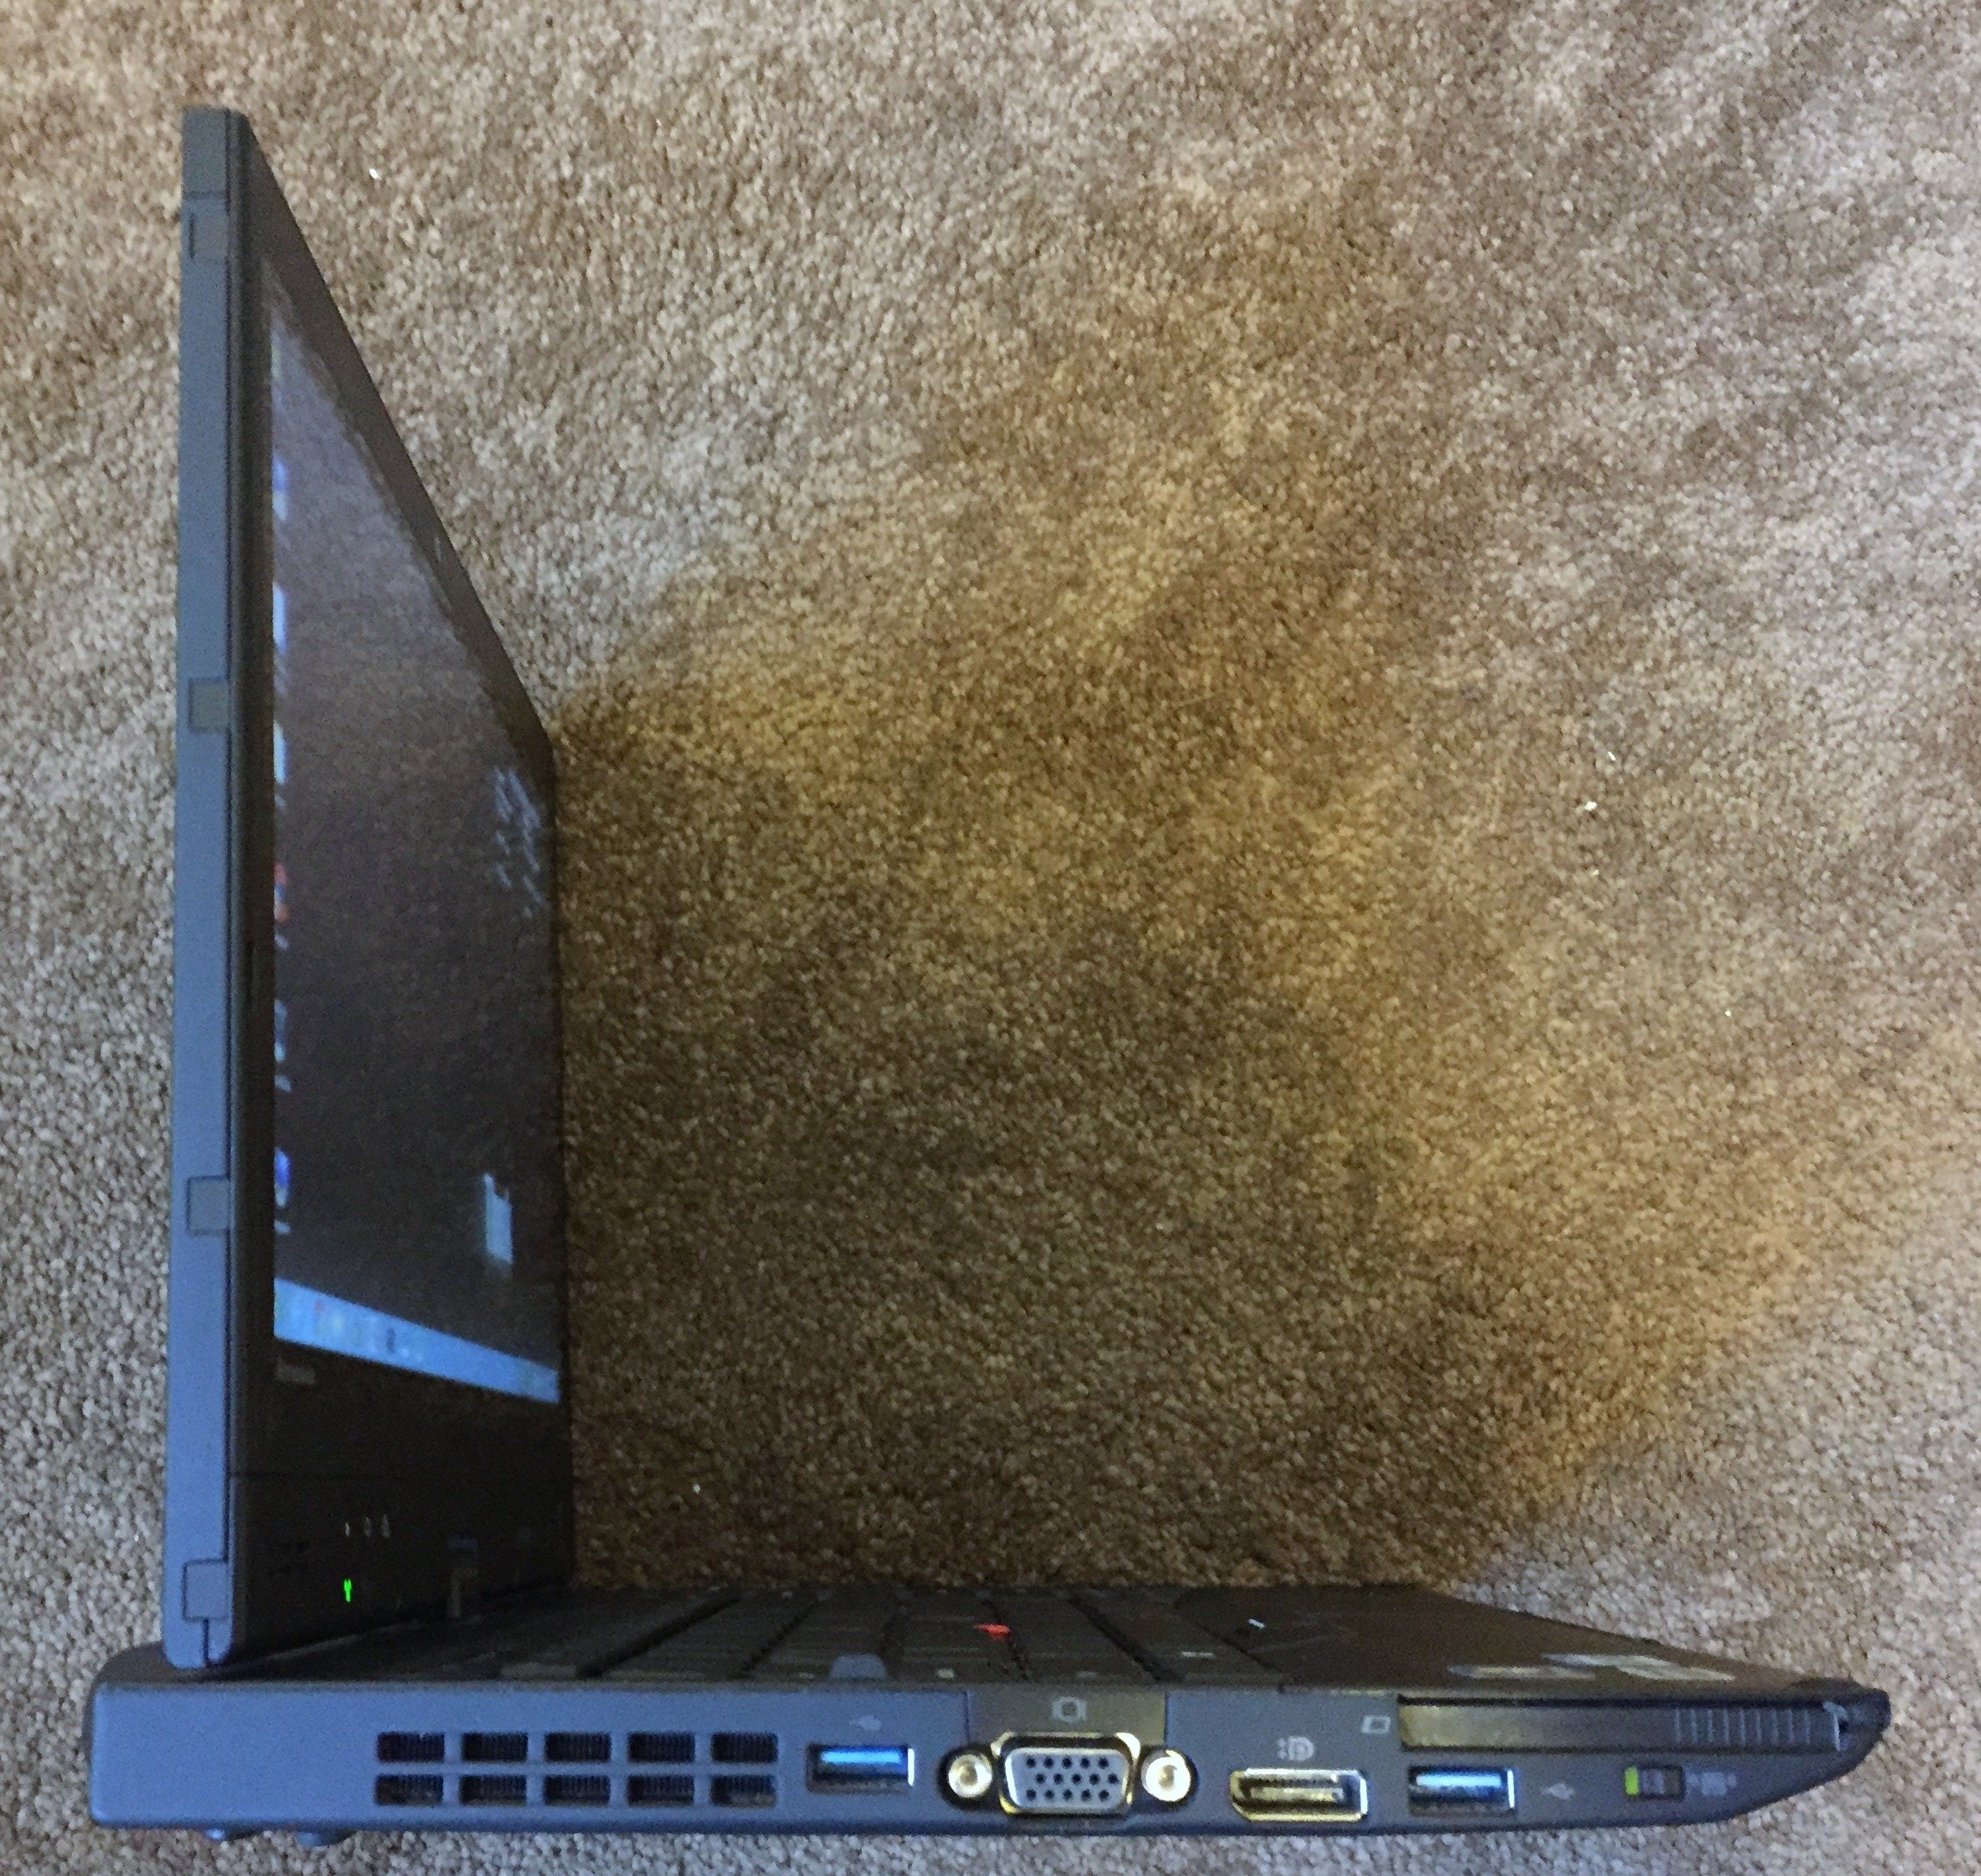 Lenovo ThinkPad X230 Tablet 343522U 13-Inch LED HD PC (2.6GHz, Intel Core i5-3320M, 4GB DDR3, 500GB HDD Windows 7 Professional)